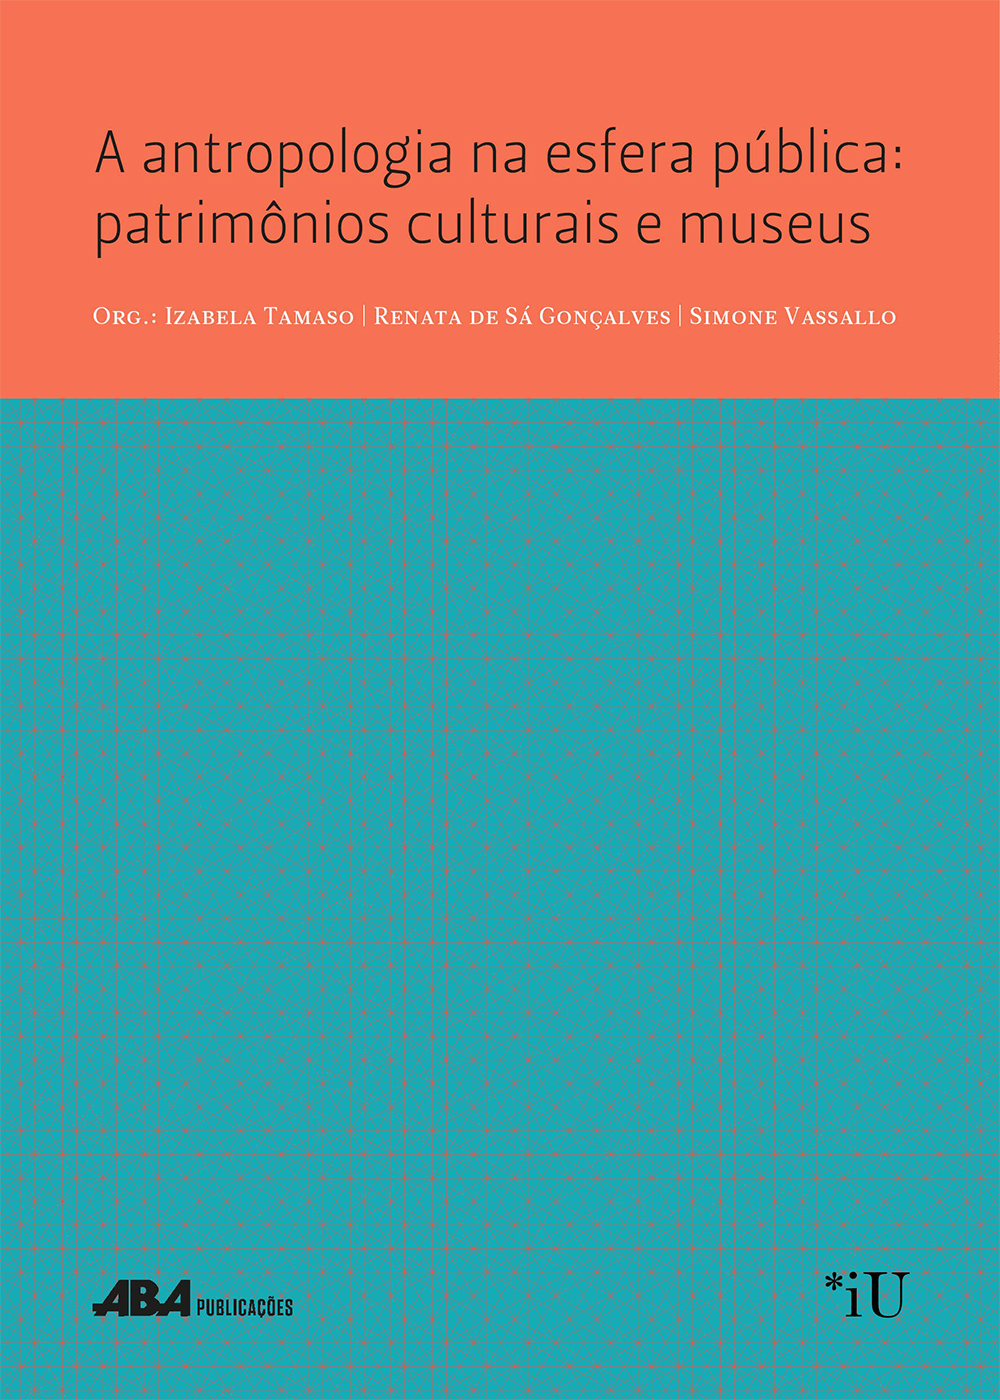 A antropologia na esfera pública: patrimônios culturais e museus